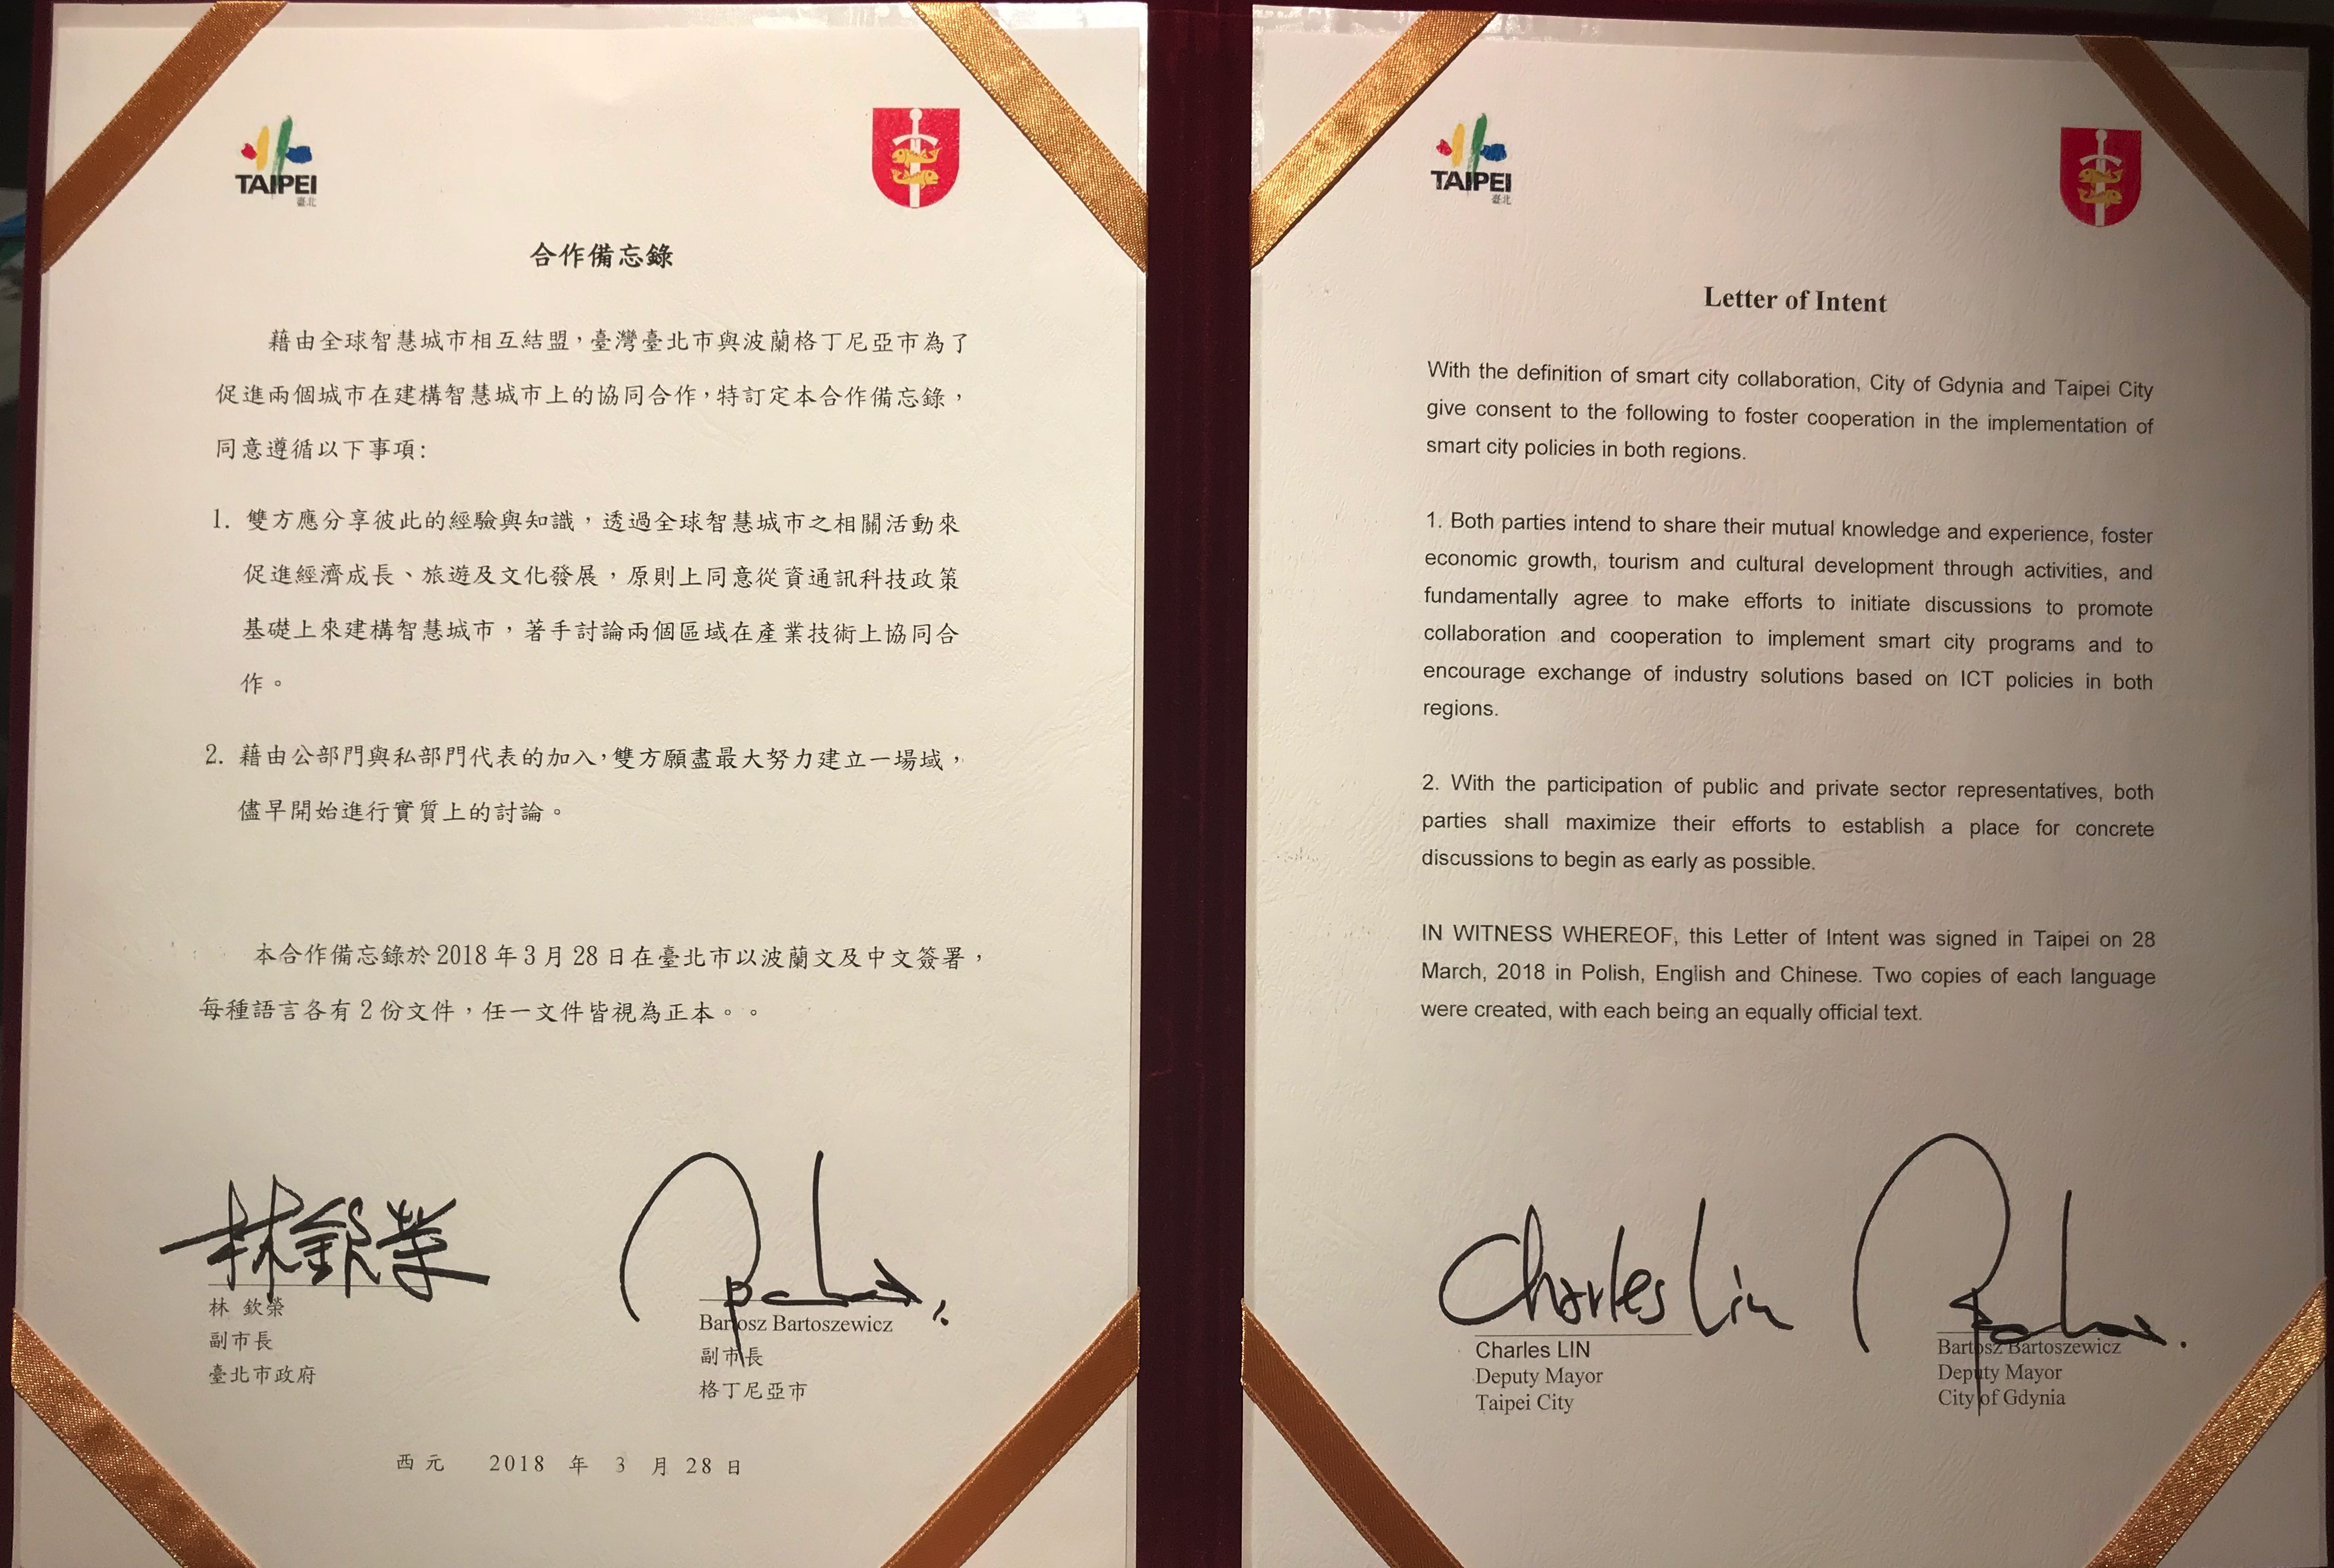 List Intencyjny pomiędzy Gdynią a Tajpej dotyczący współpracy w zakresie wdrażania polityki inteligentnych miast, w wersjach językowych: chińskiej oraz angielskiej